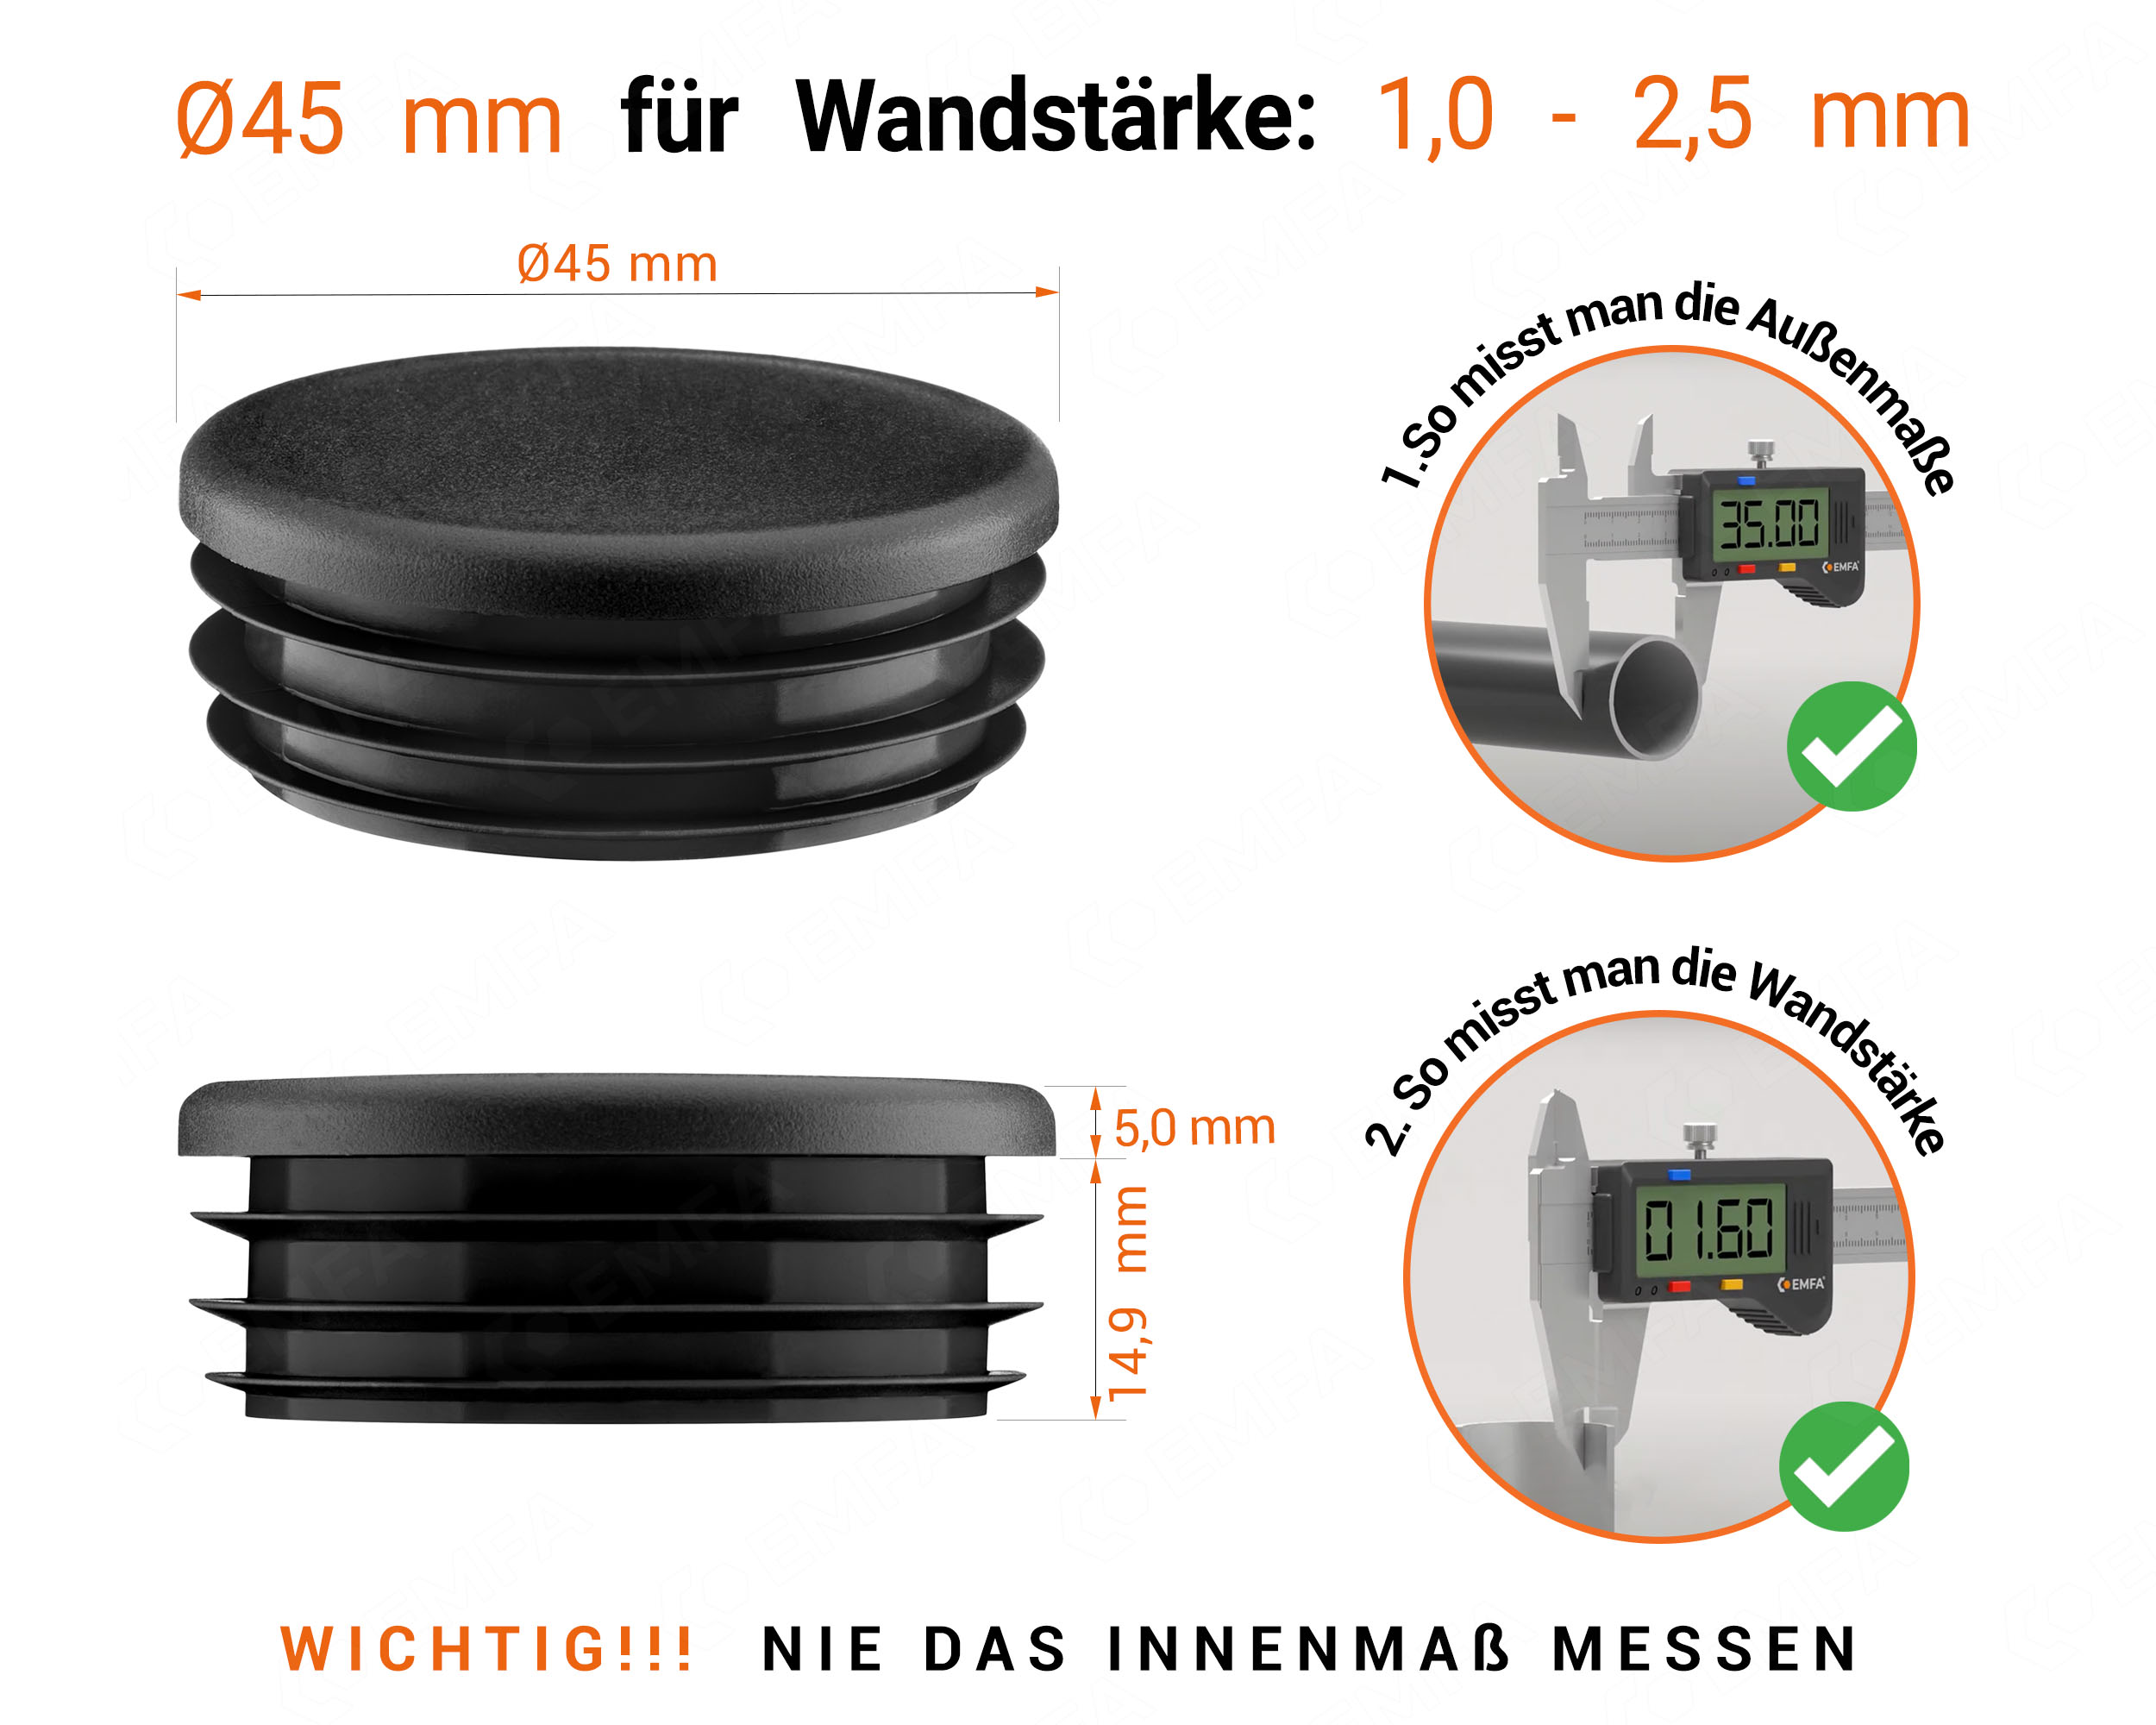 Schwarze Endkappe für Rundrohre in der Größe 45 mm mit technischen Abmessungen und Anleitung für korrekte Messung